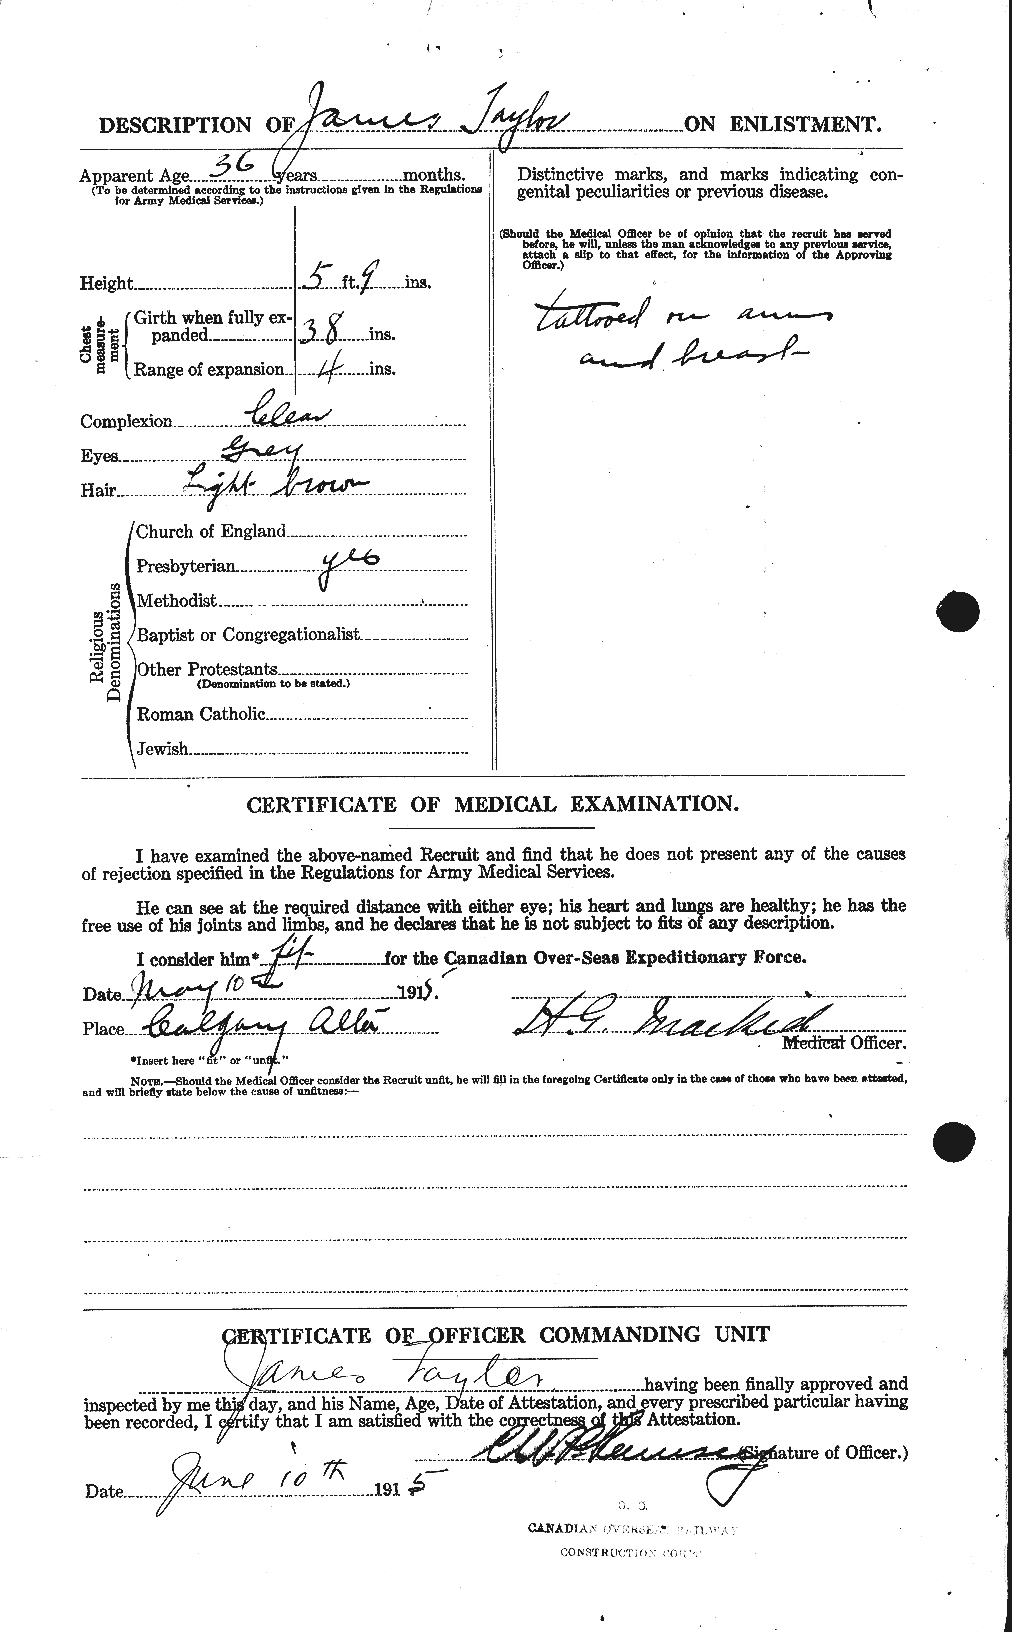 Dossiers du Personnel de la Première Guerre mondiale - CEC 626681b